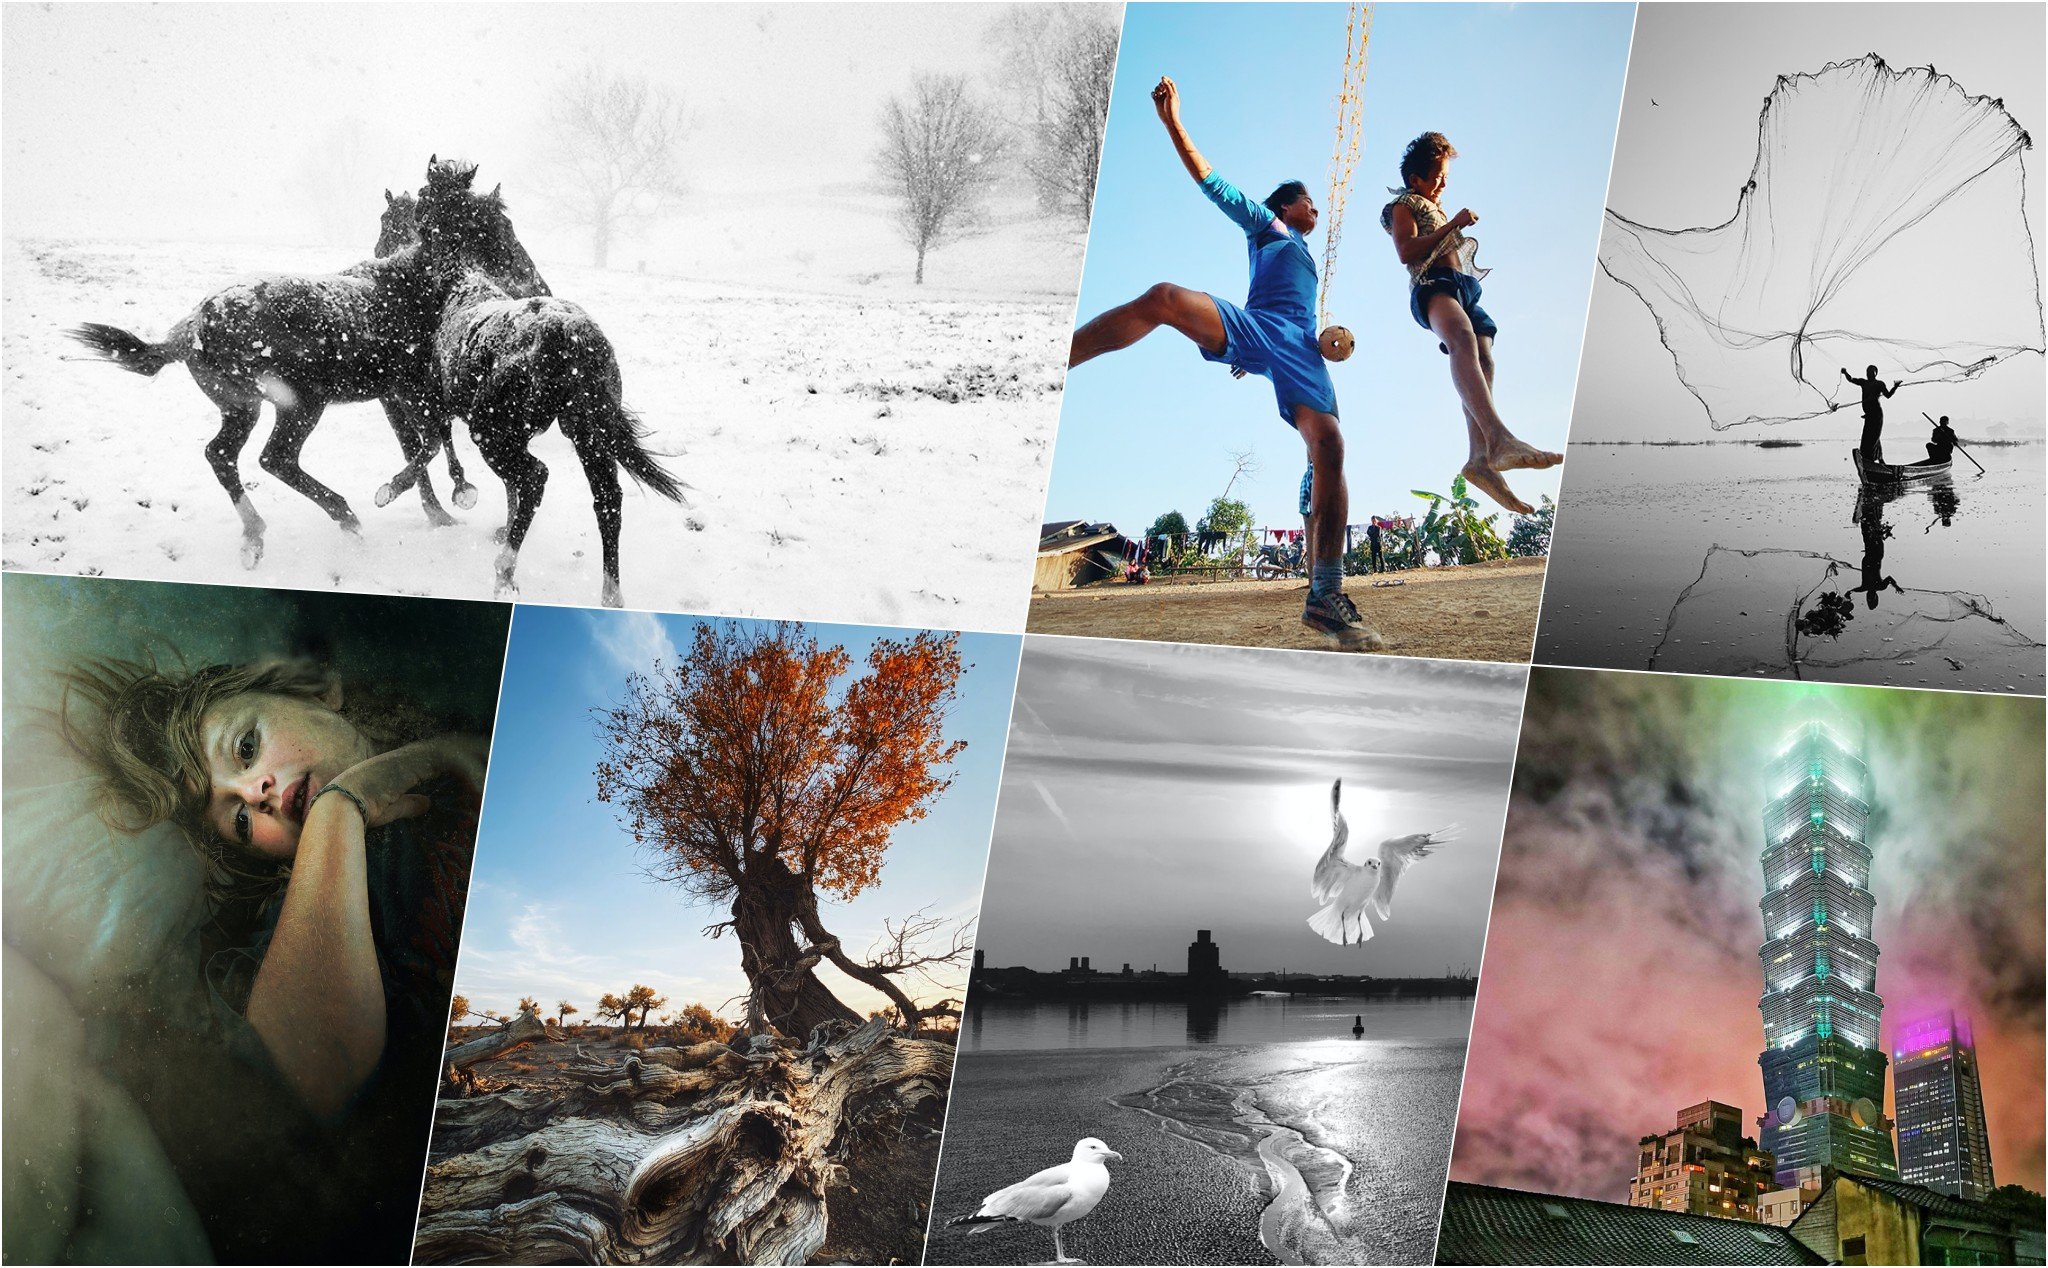 Cùng xem 150 tấm ảnh đẹp nhất tại cuộc thi Mobile Photography & Art năm 2020